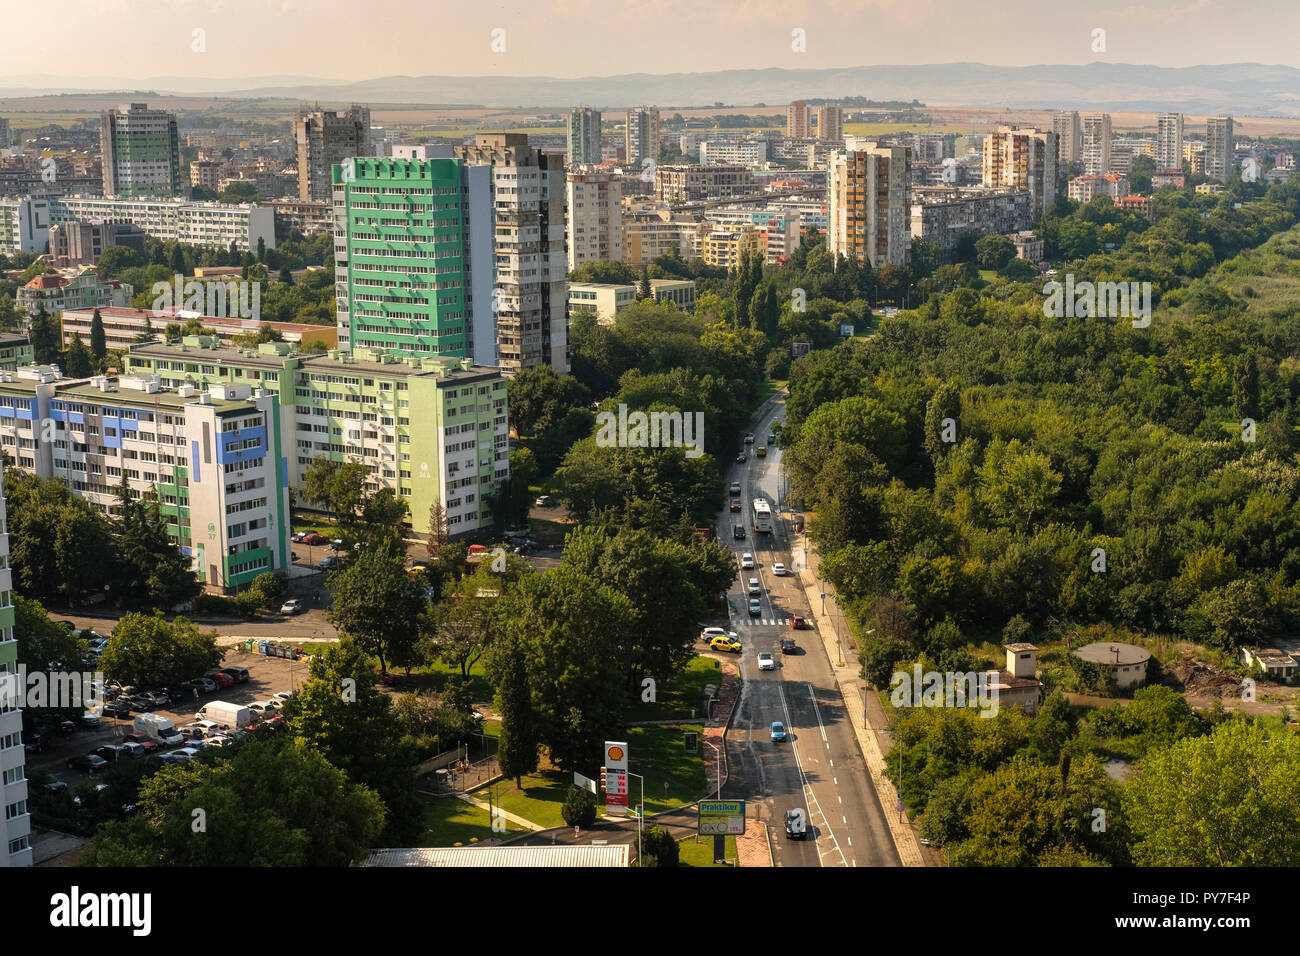 Bulgaria, Burgas.Vista aérea de los altos edificios de bloques residenciales de la época comunista a la izquierda y el parque del mar, en el lado derecho. Foto de stock